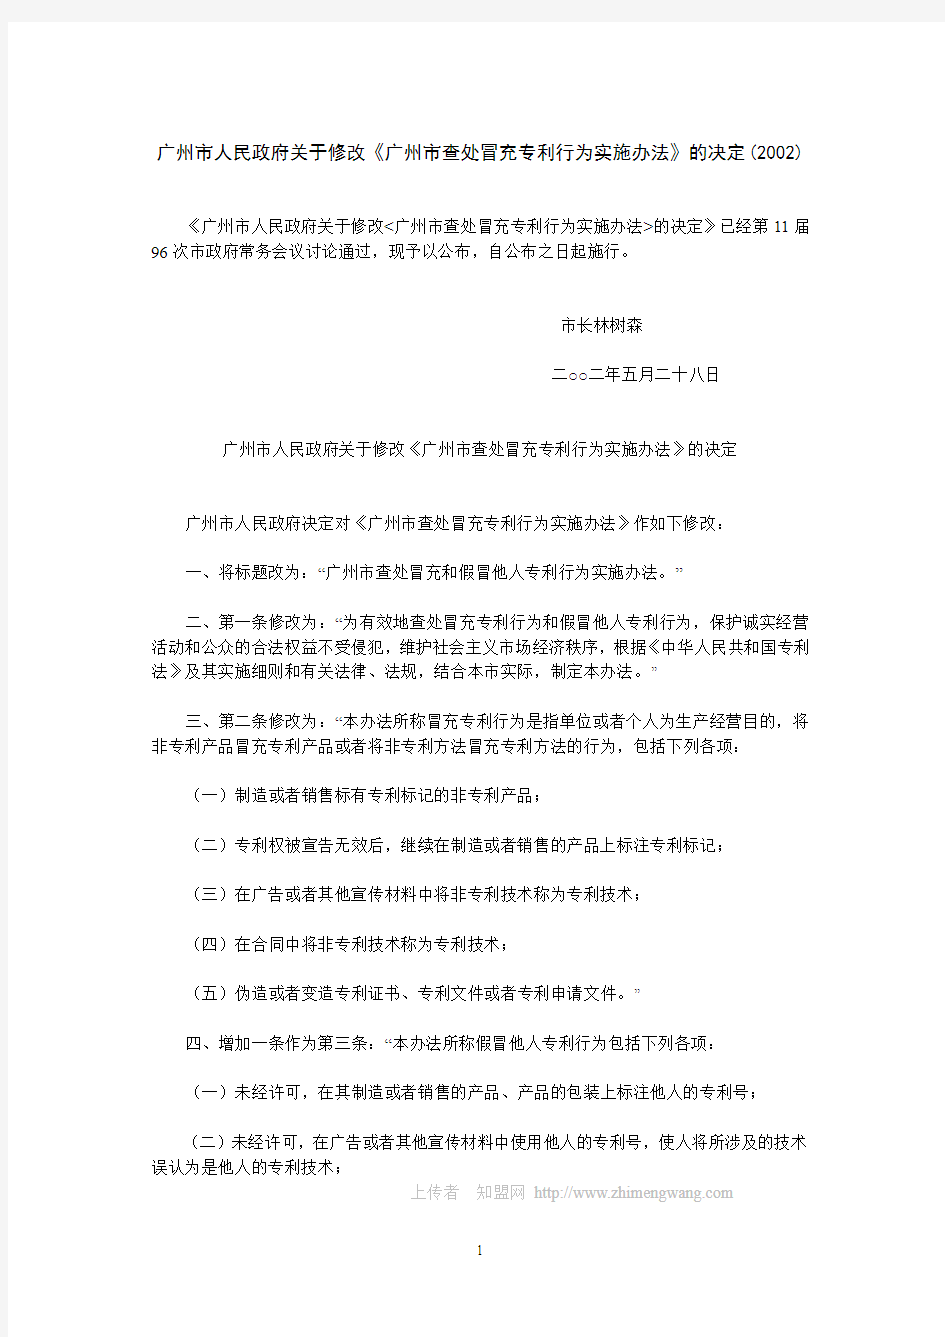 广州市人民政府关于修改《广州市查处冒充专利行为实施办法》的决定